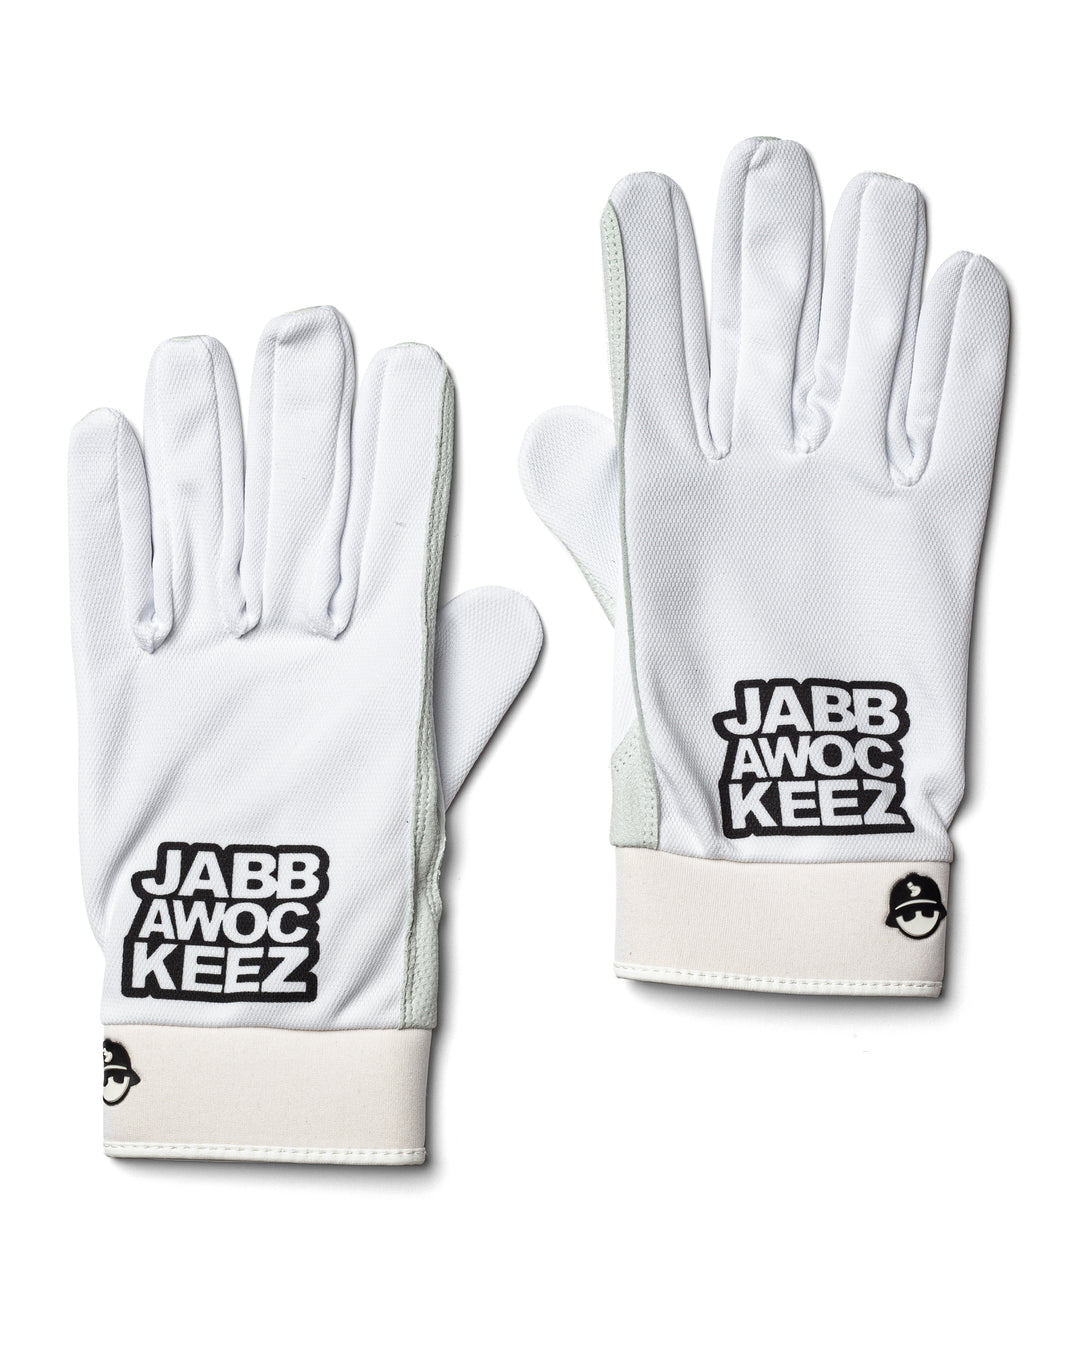 Gloves - Official Jabbawockeez